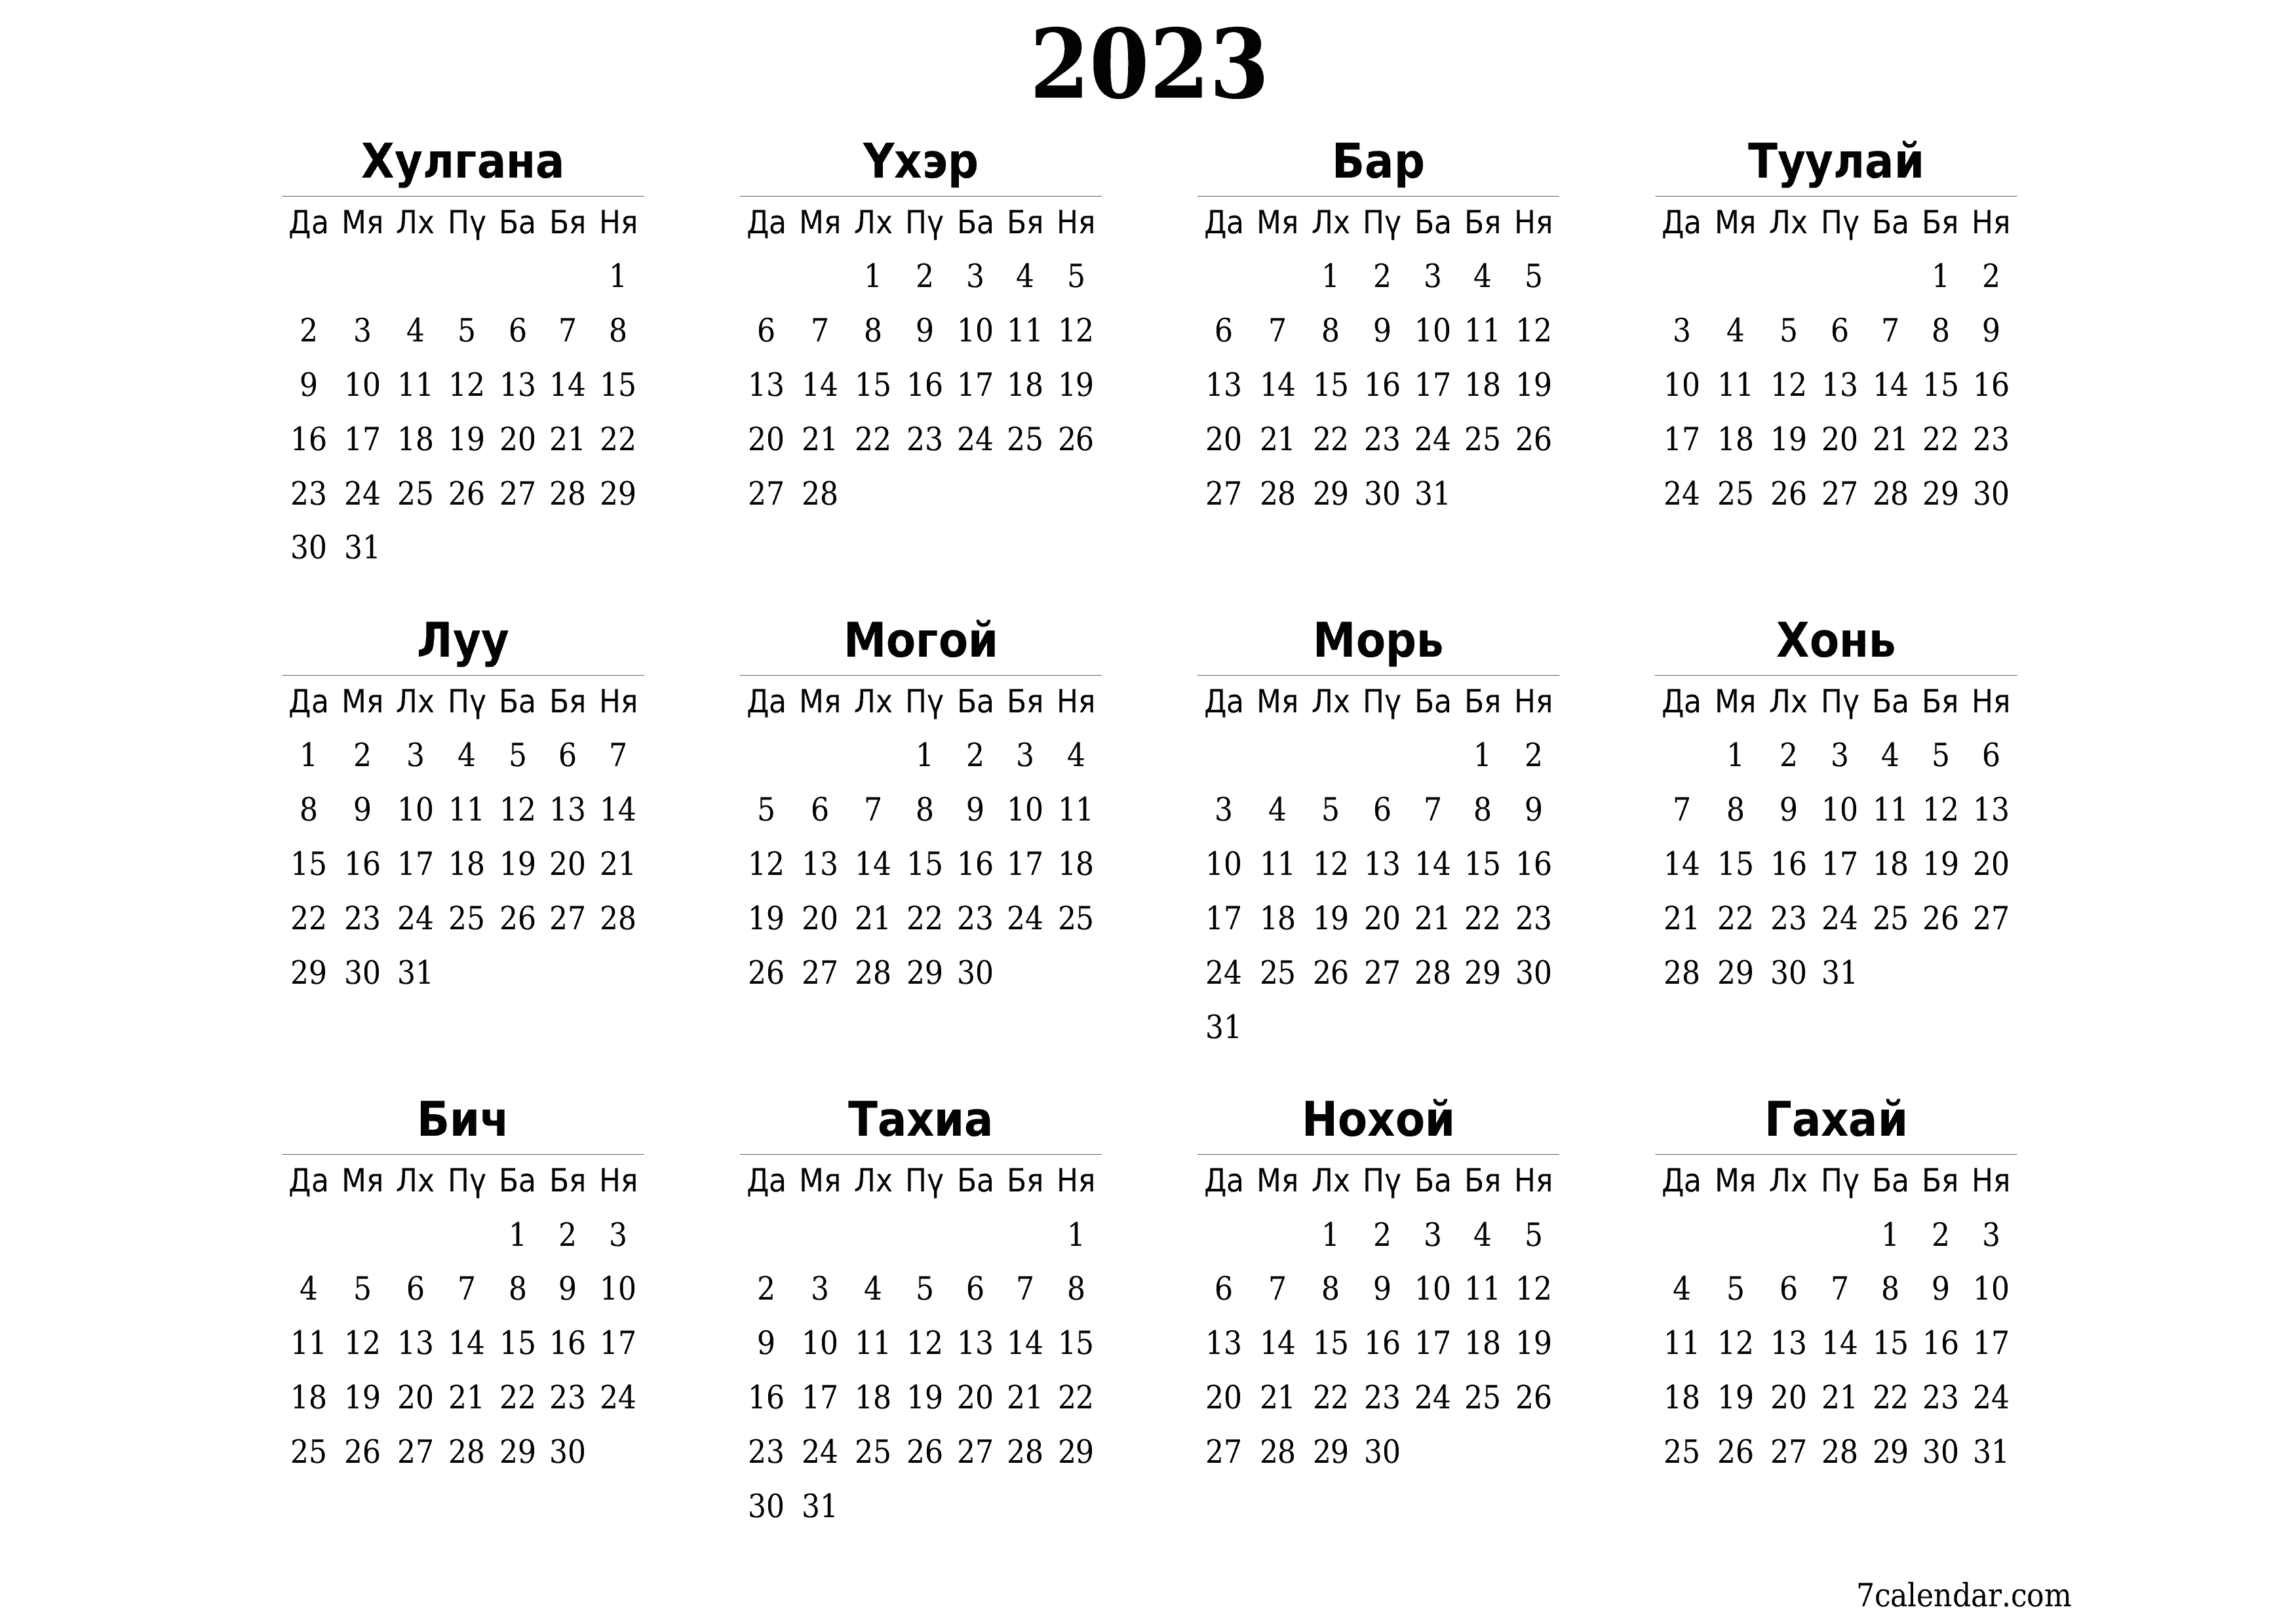 хэвлэх боломжтой ханын календарийн загвар үнэгүй хэвтээ Жилд хуанли Үхэр (Үхэ) 2023